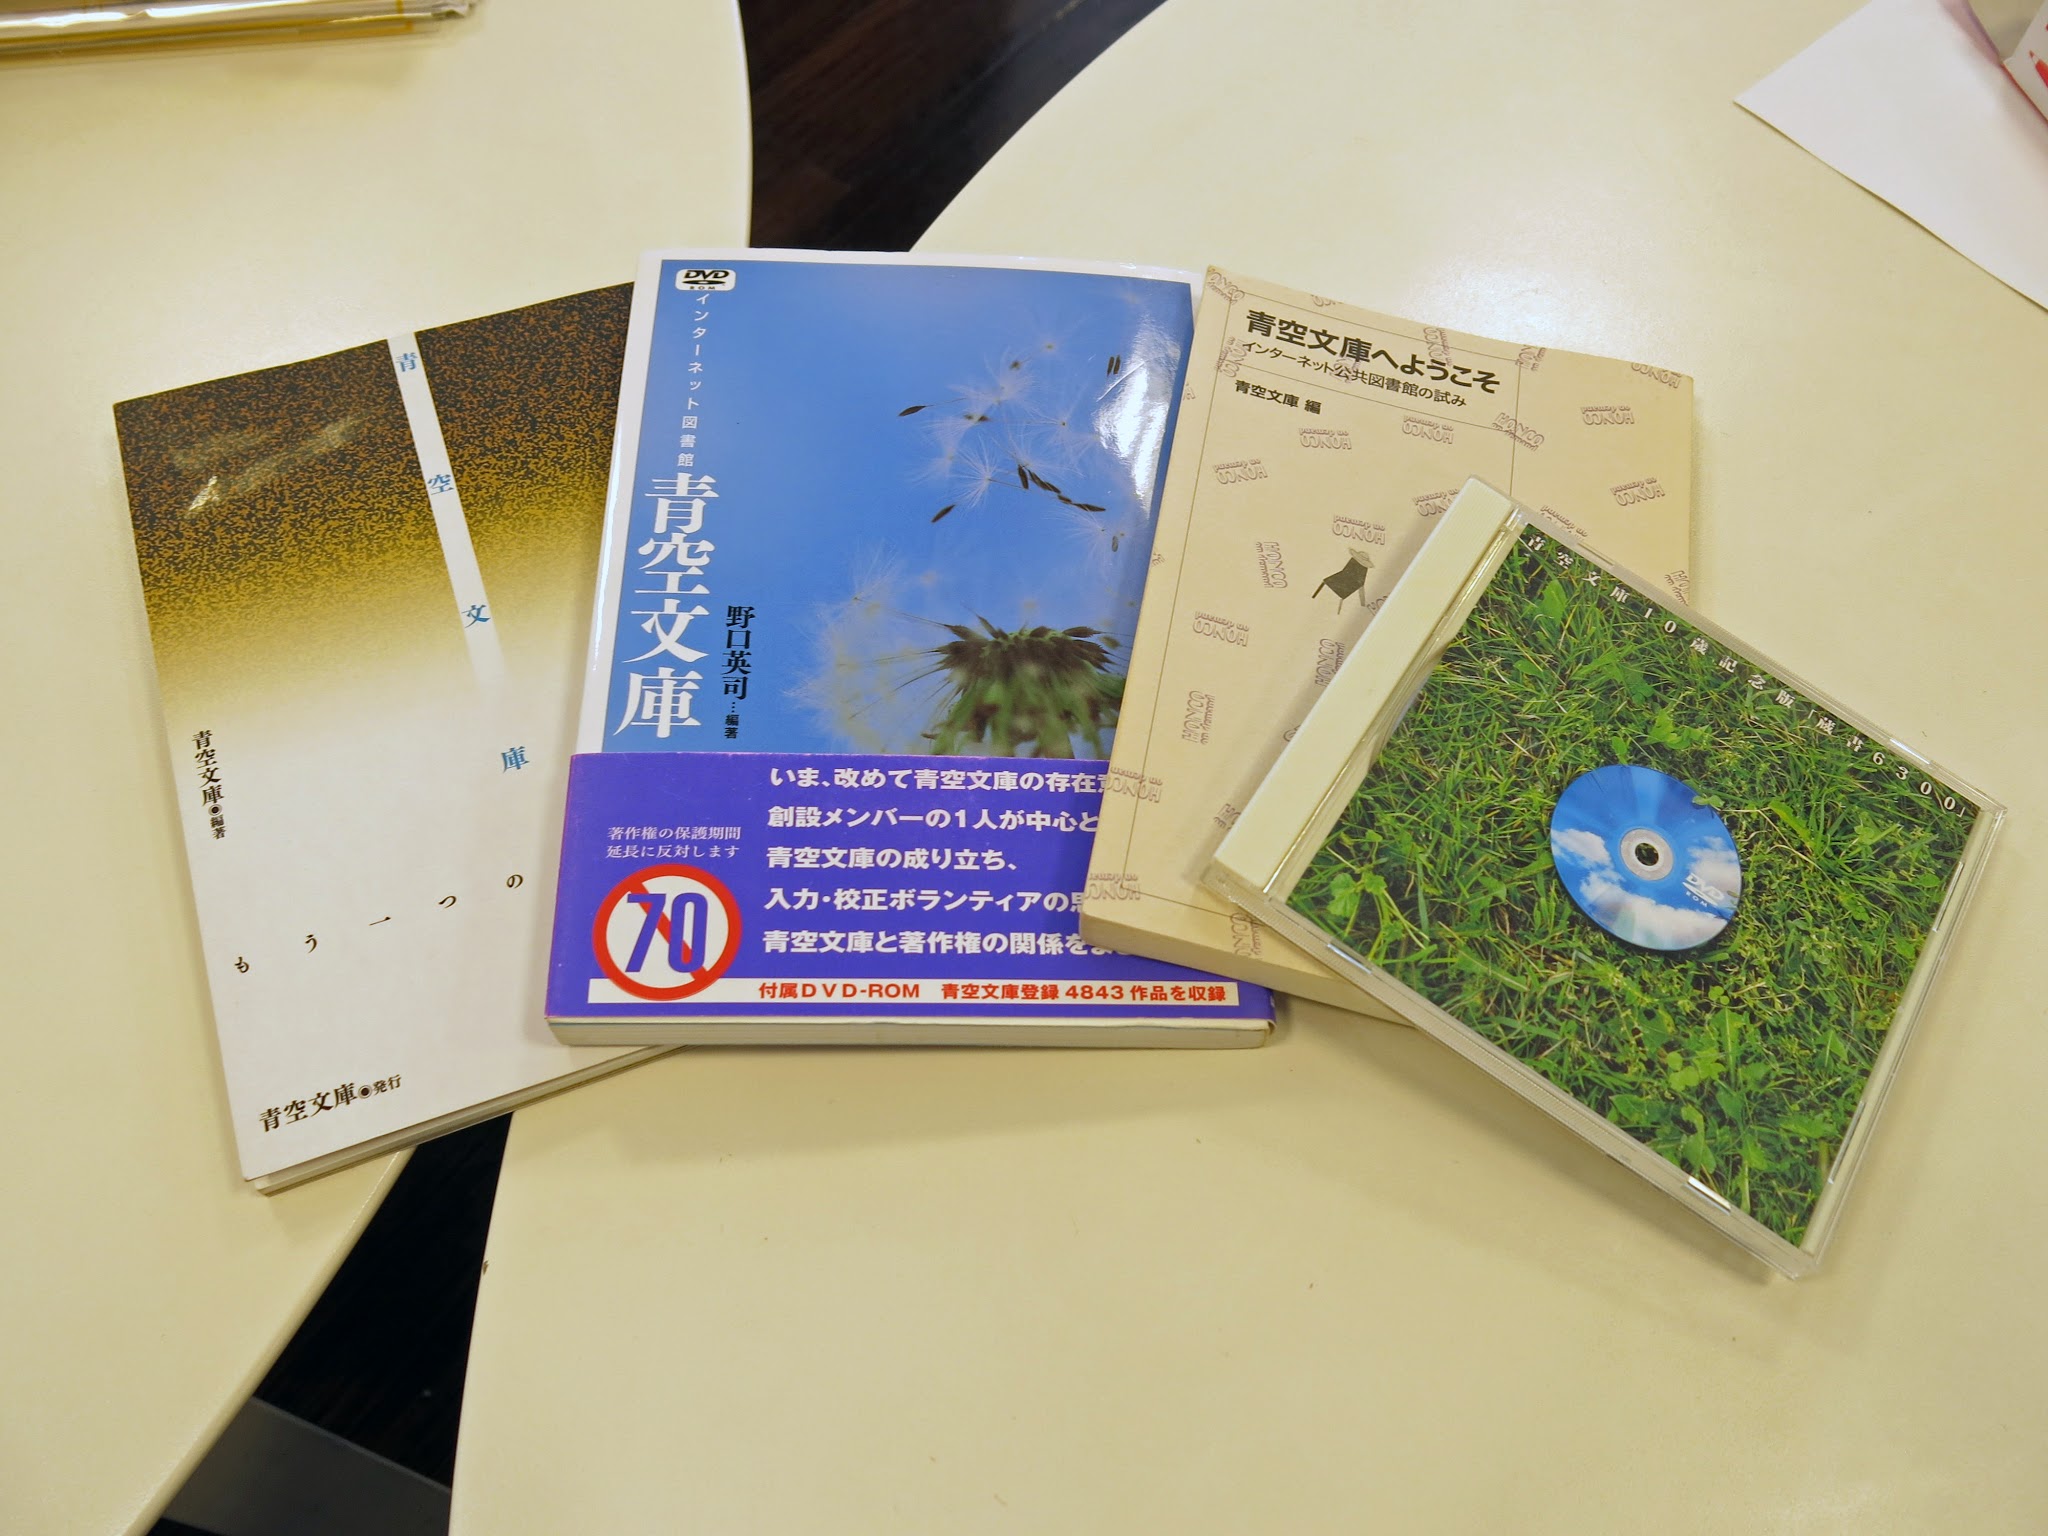 青空文庫関連の本屋CD-ROM